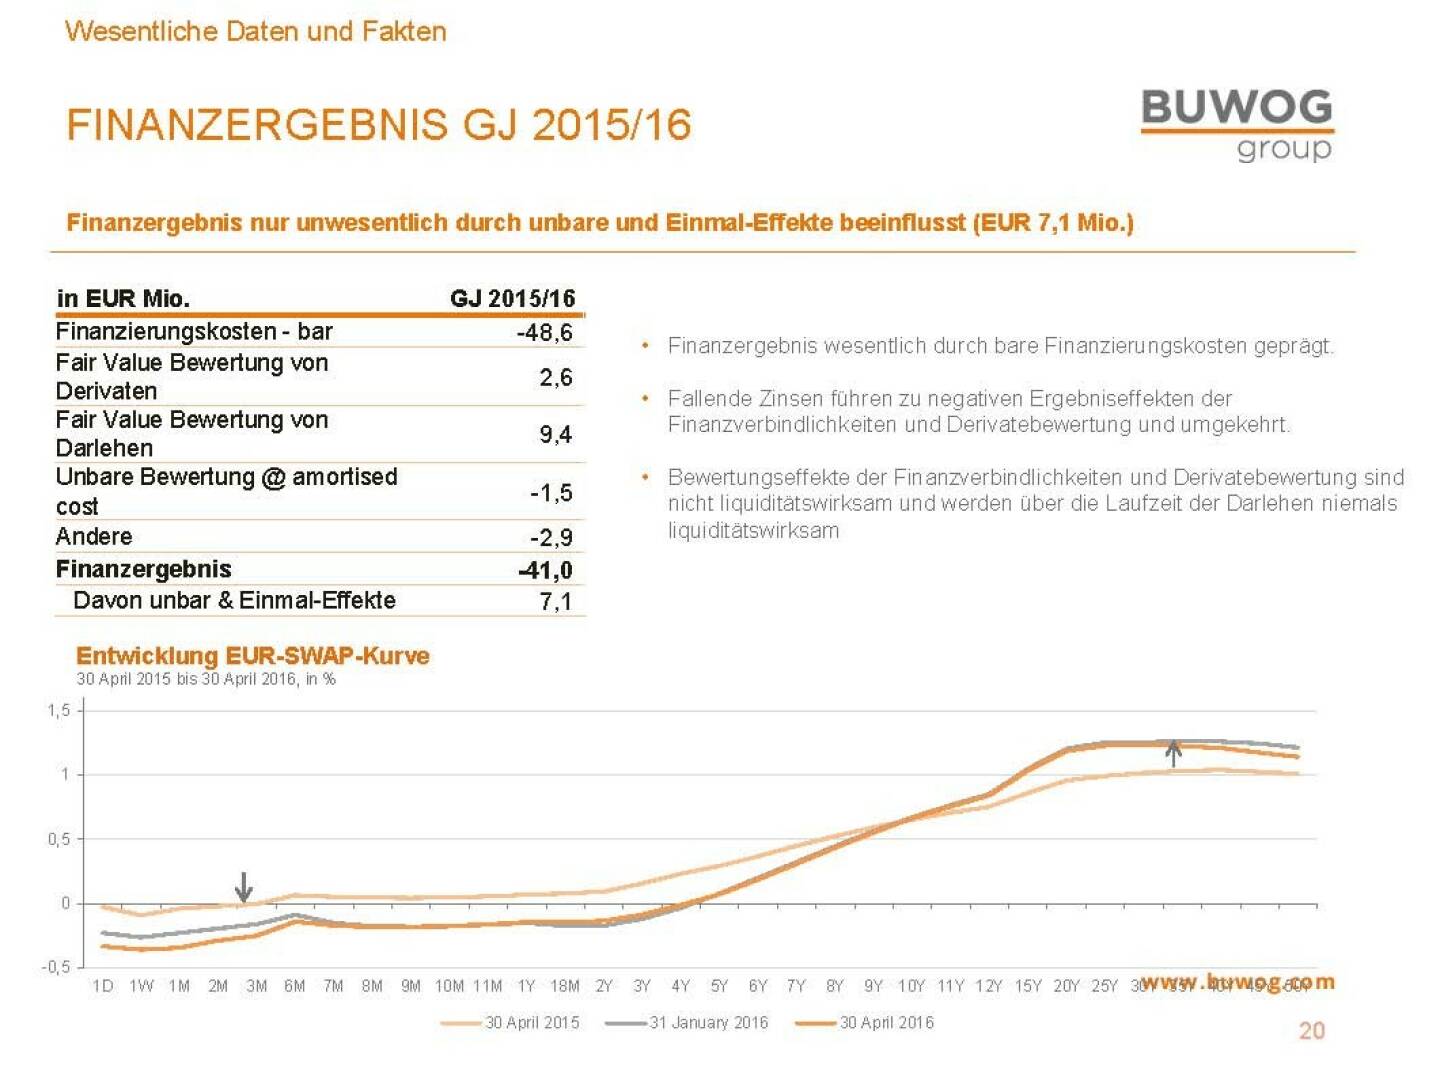 Buwog Group - Finanzergebnis 2015/16